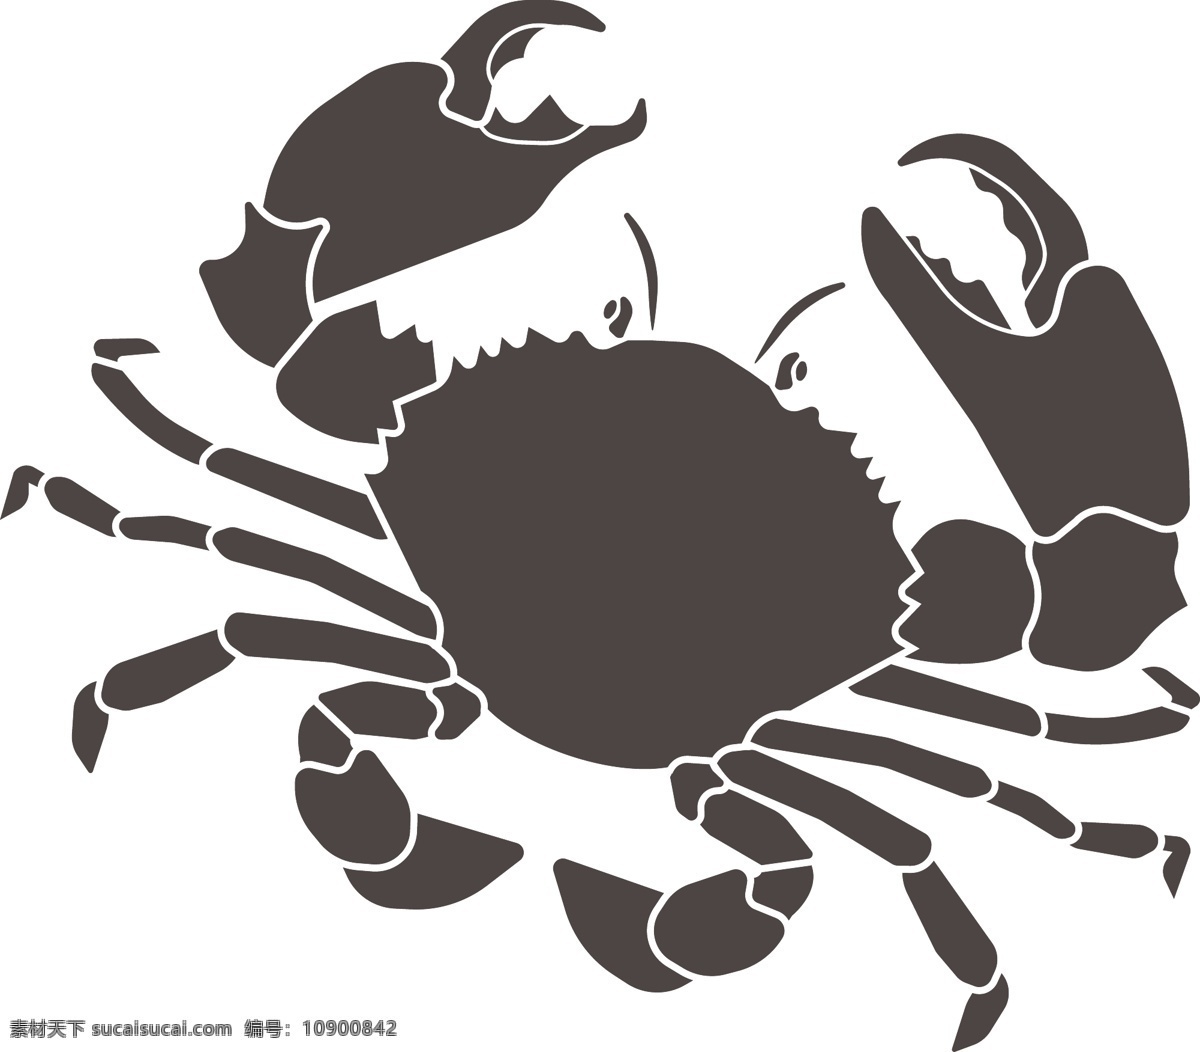 螃蟹矢量图 螃蟹 河蟹 大闸蟹 蟹子 可随意更改 生活百科